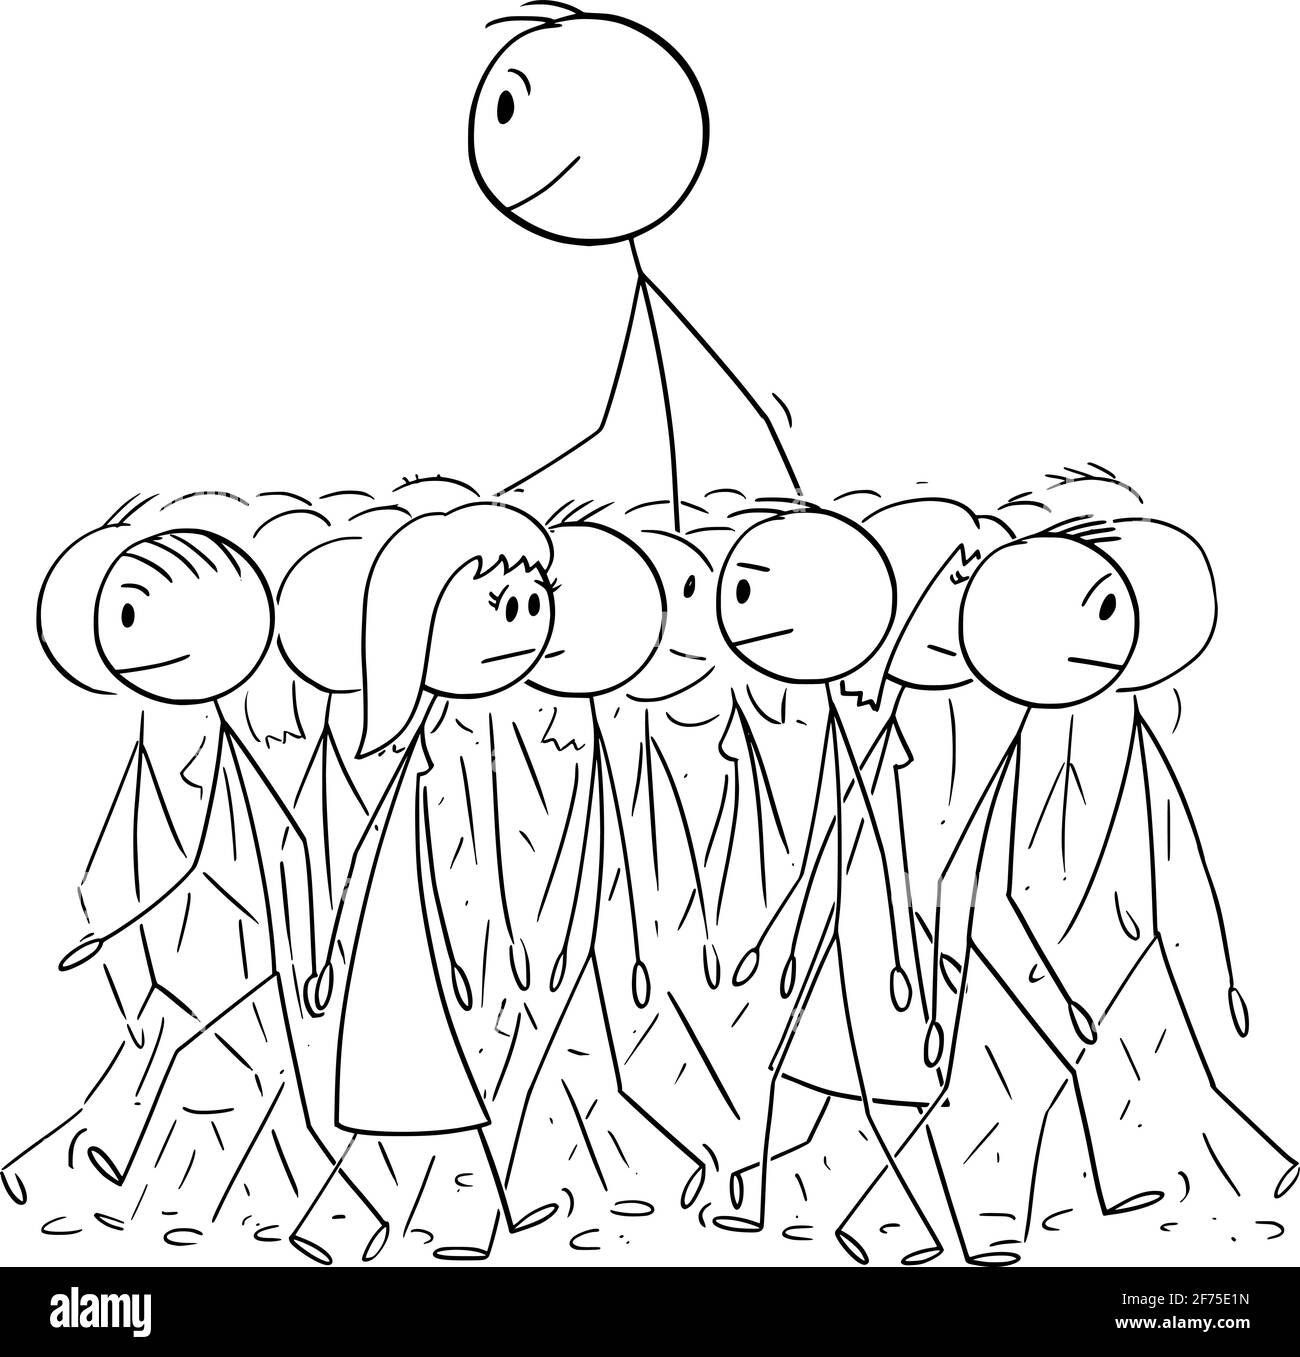 Big man Walking in Durchschnittliche Menschenmenge, Individualität und Unterscheidungskraft, Vektor Cartoon Stick Figur Illustration Stock Vektor